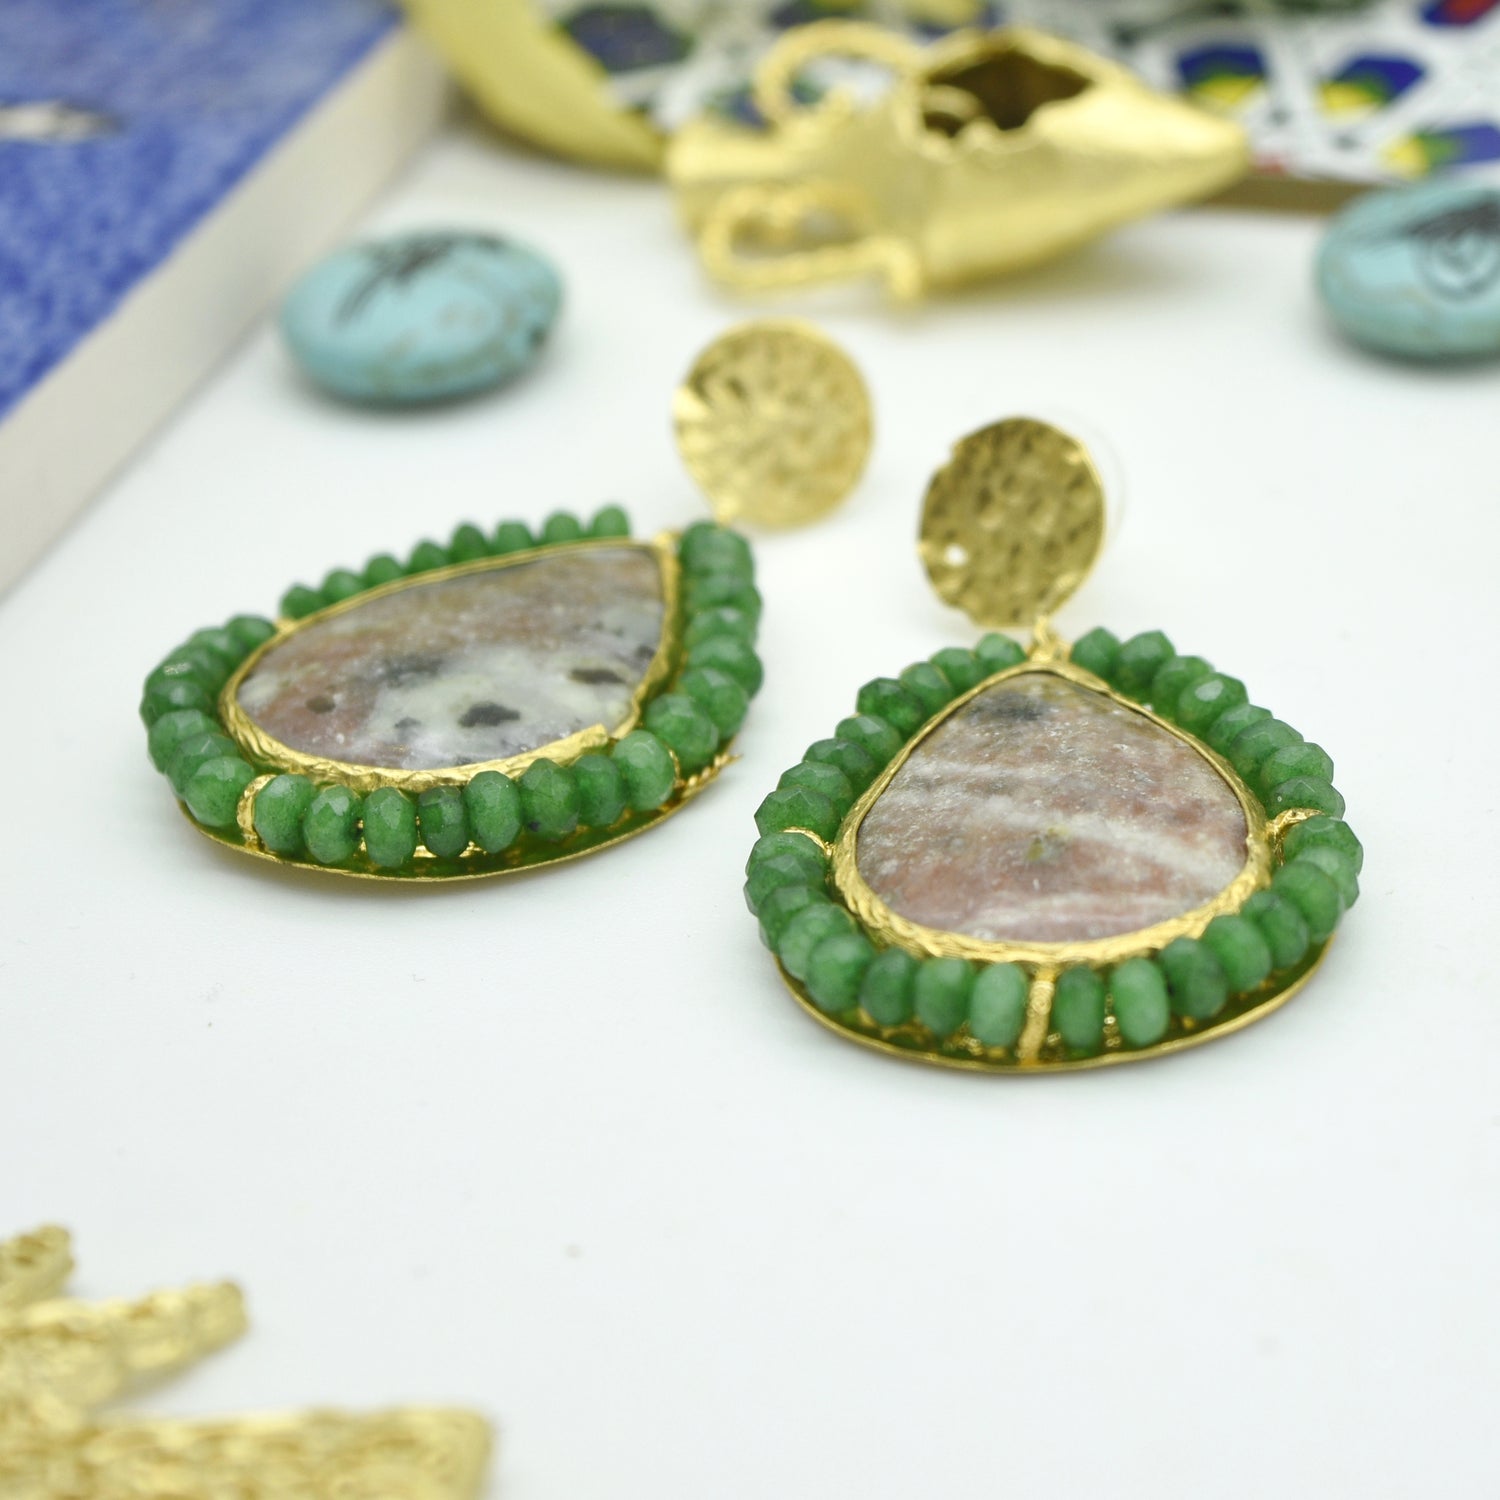 Aylas Jasper Jade semi precious gemstone earrings - 21ct Gold plated Handmade